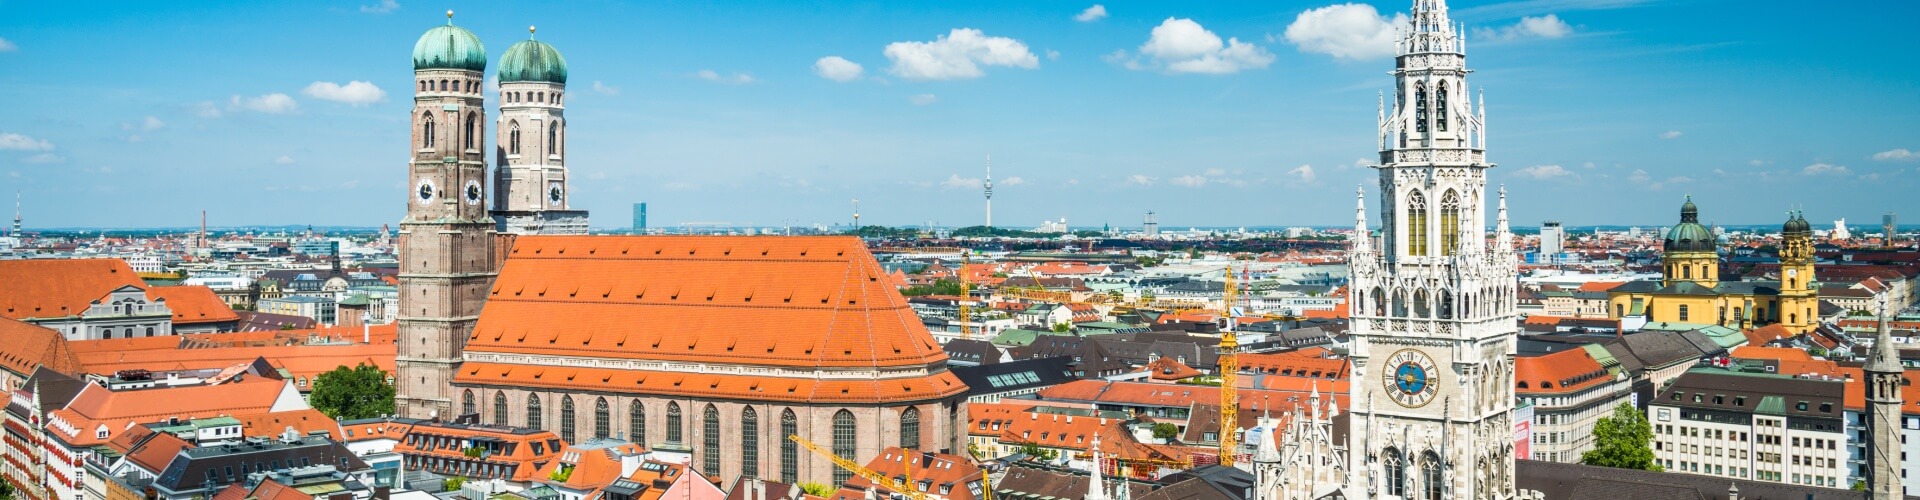 München mit dem Rathaus und der Frauenkirche